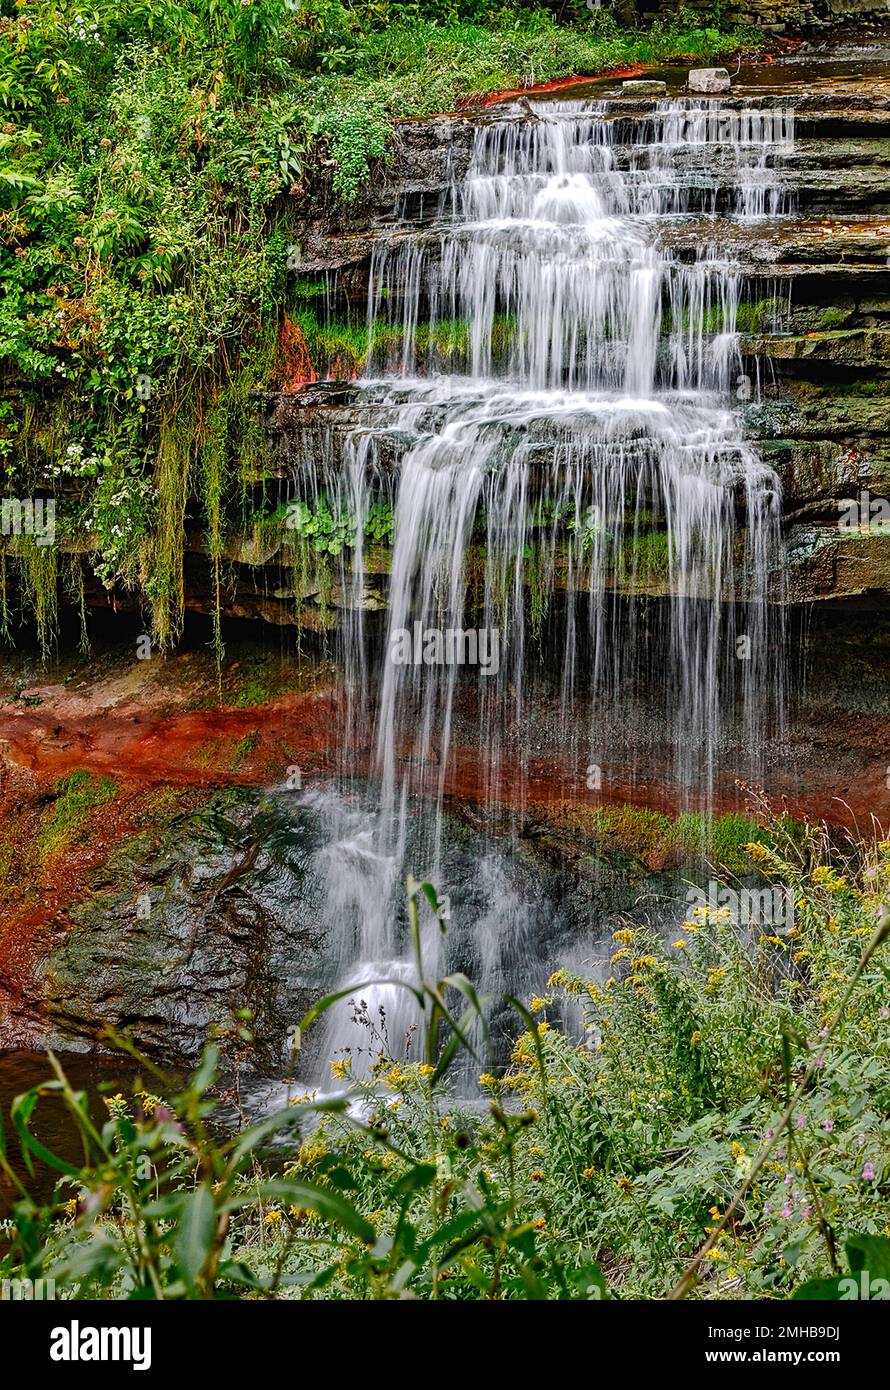 Bella cascata nella foresta autunnale, torrente setoso e liscio. Foto Stock